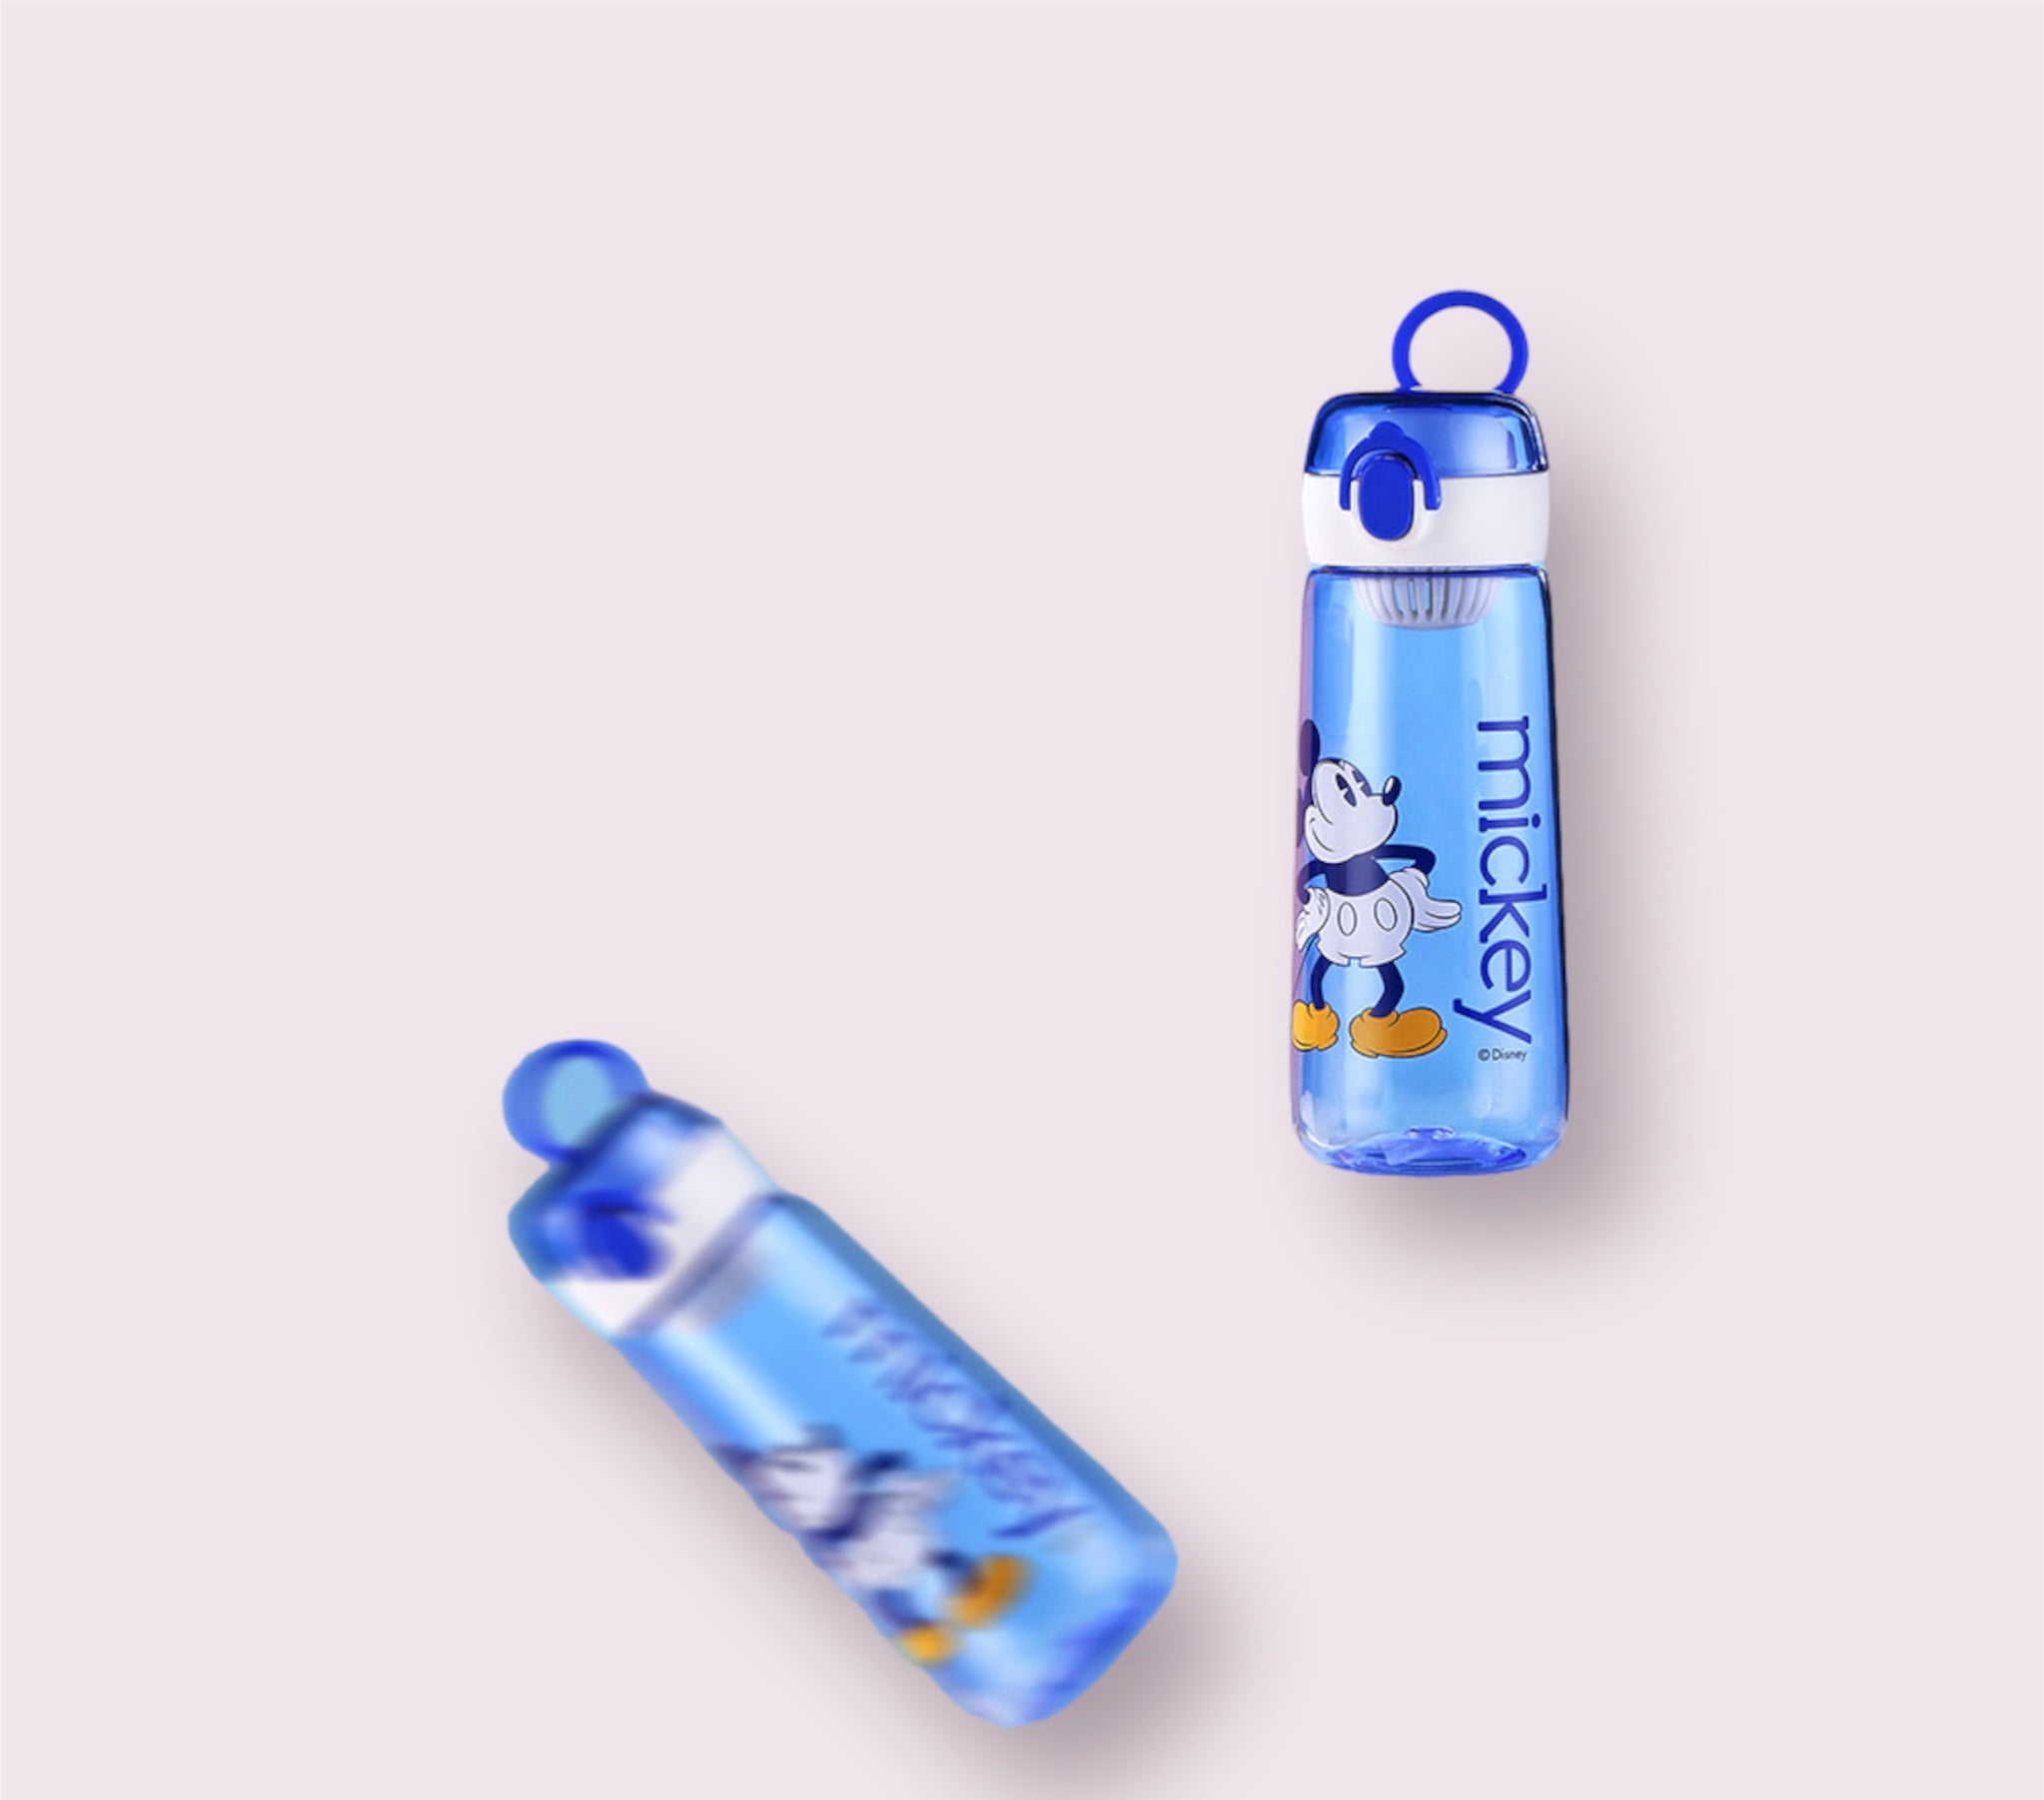 Mickey Water Bottle